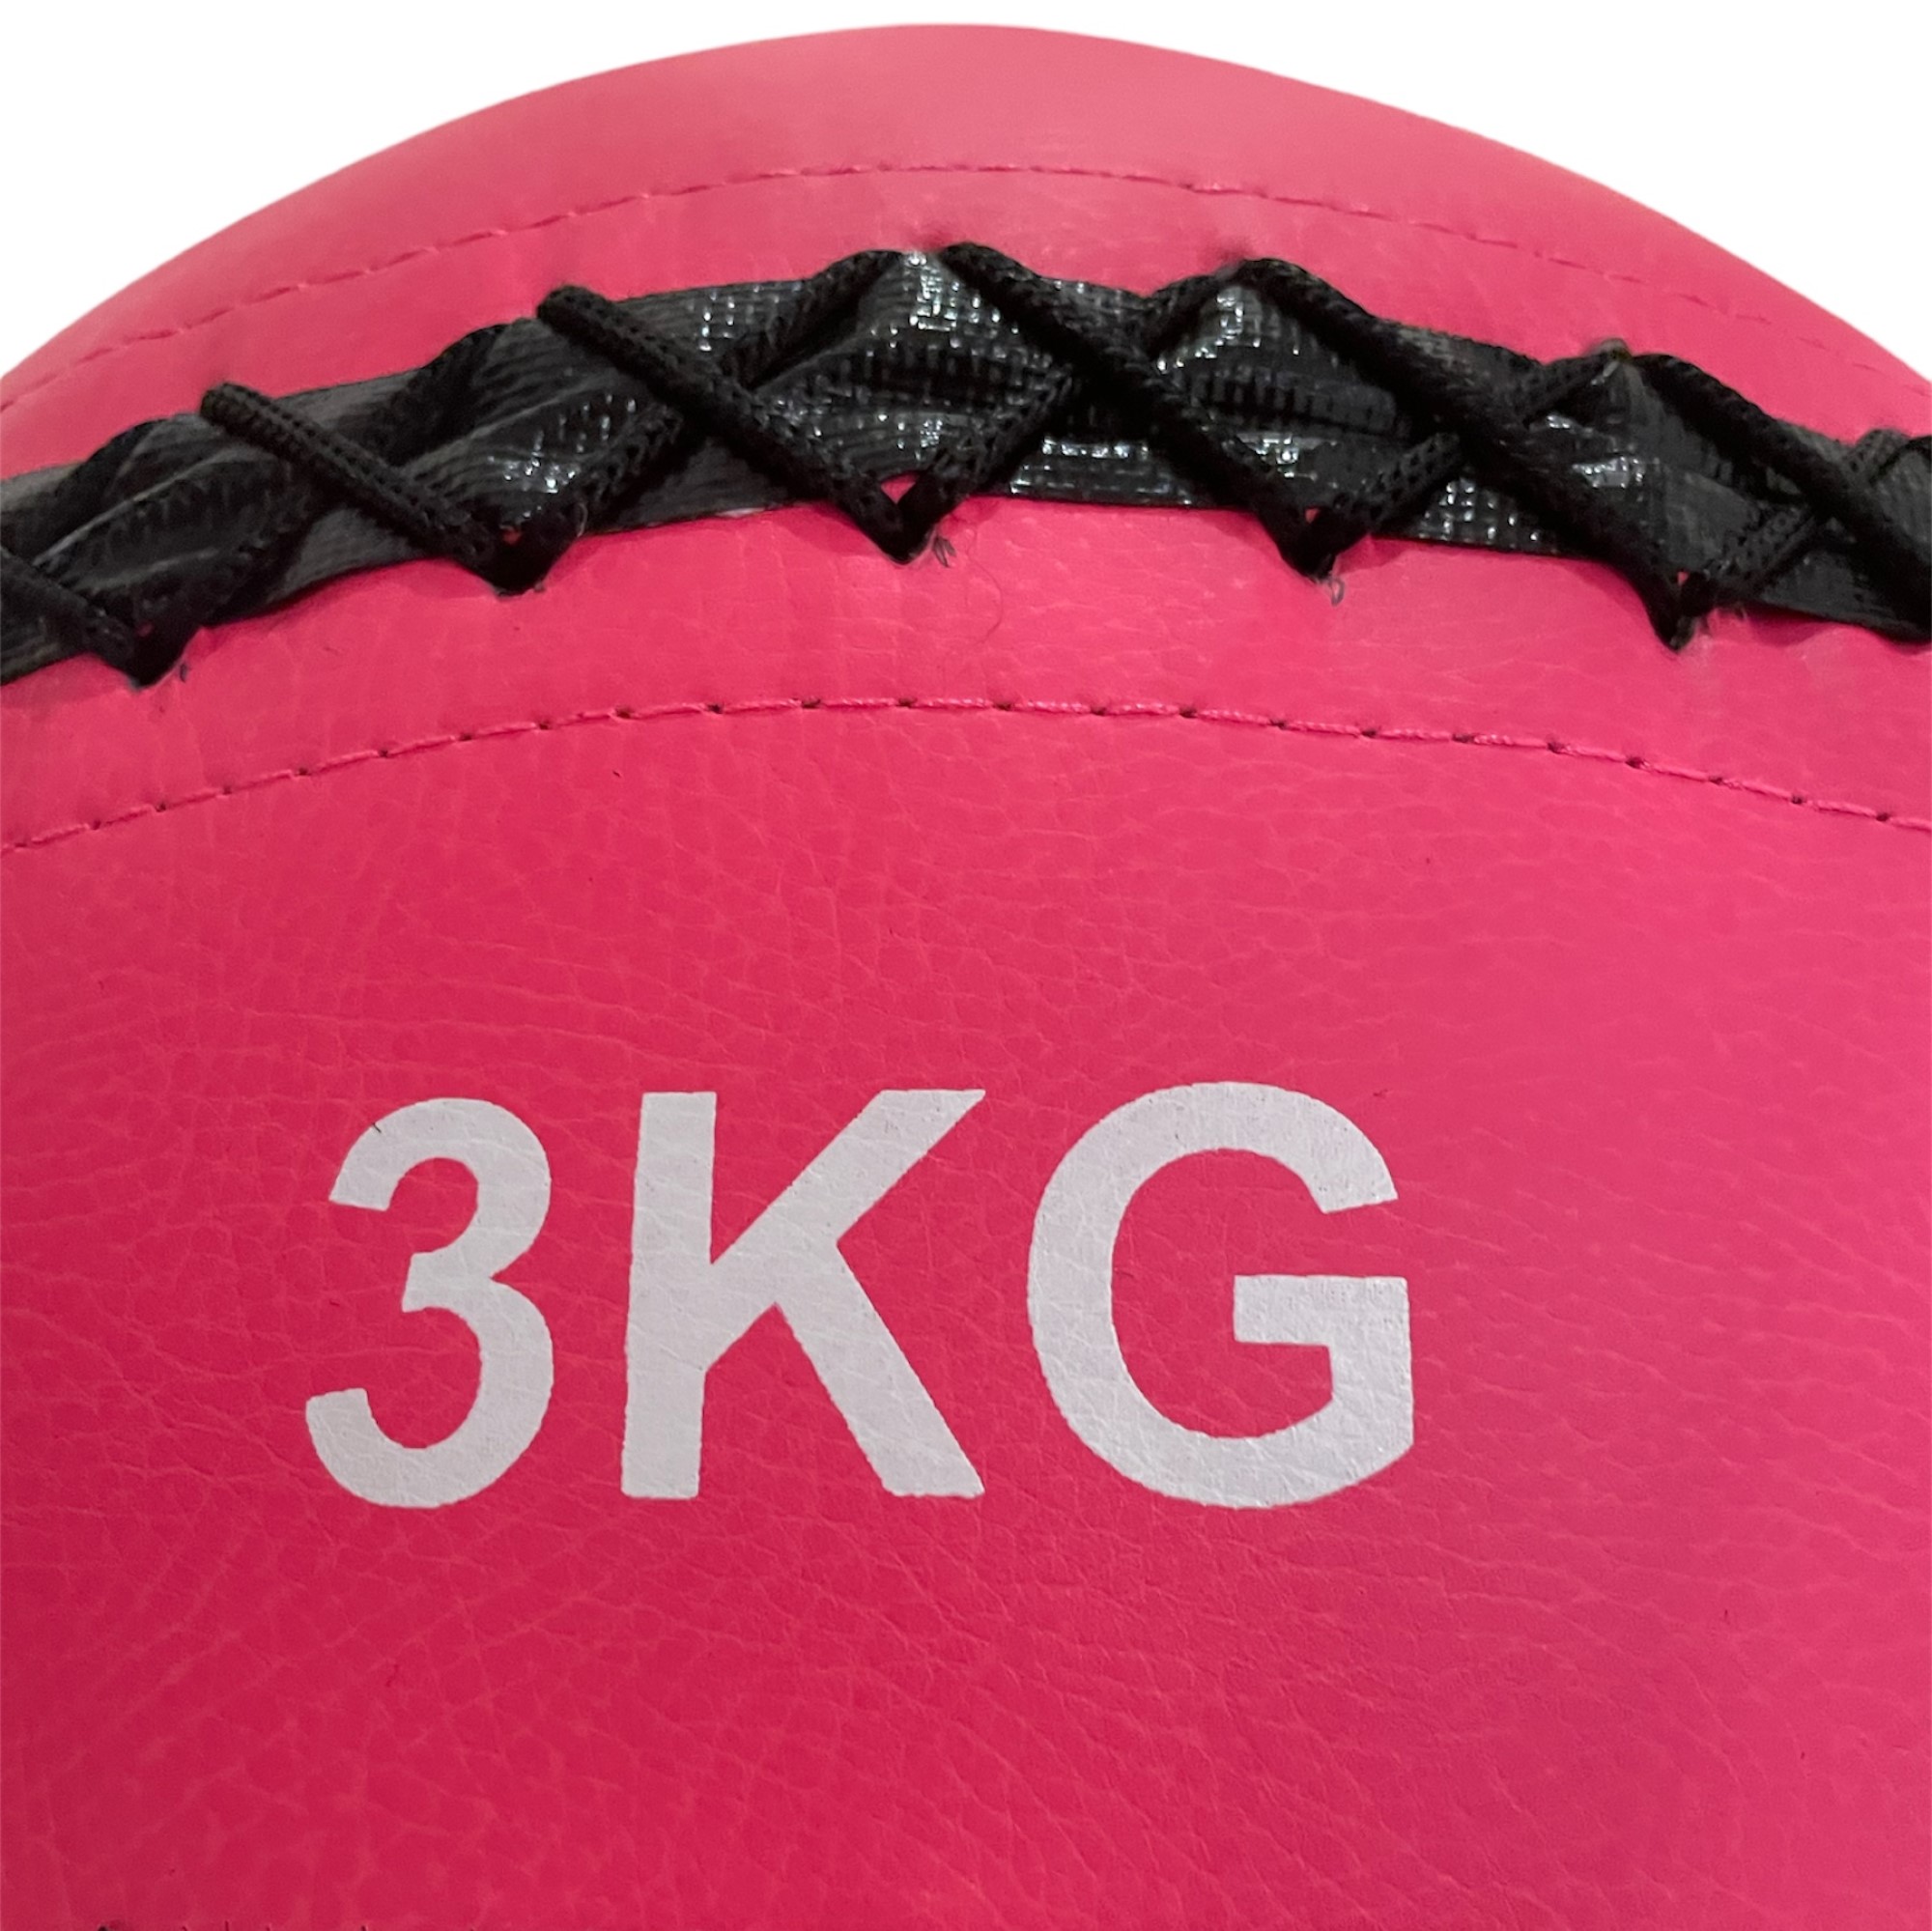 Wall Ball – Medicinball – Træningsbold på 3 kg.